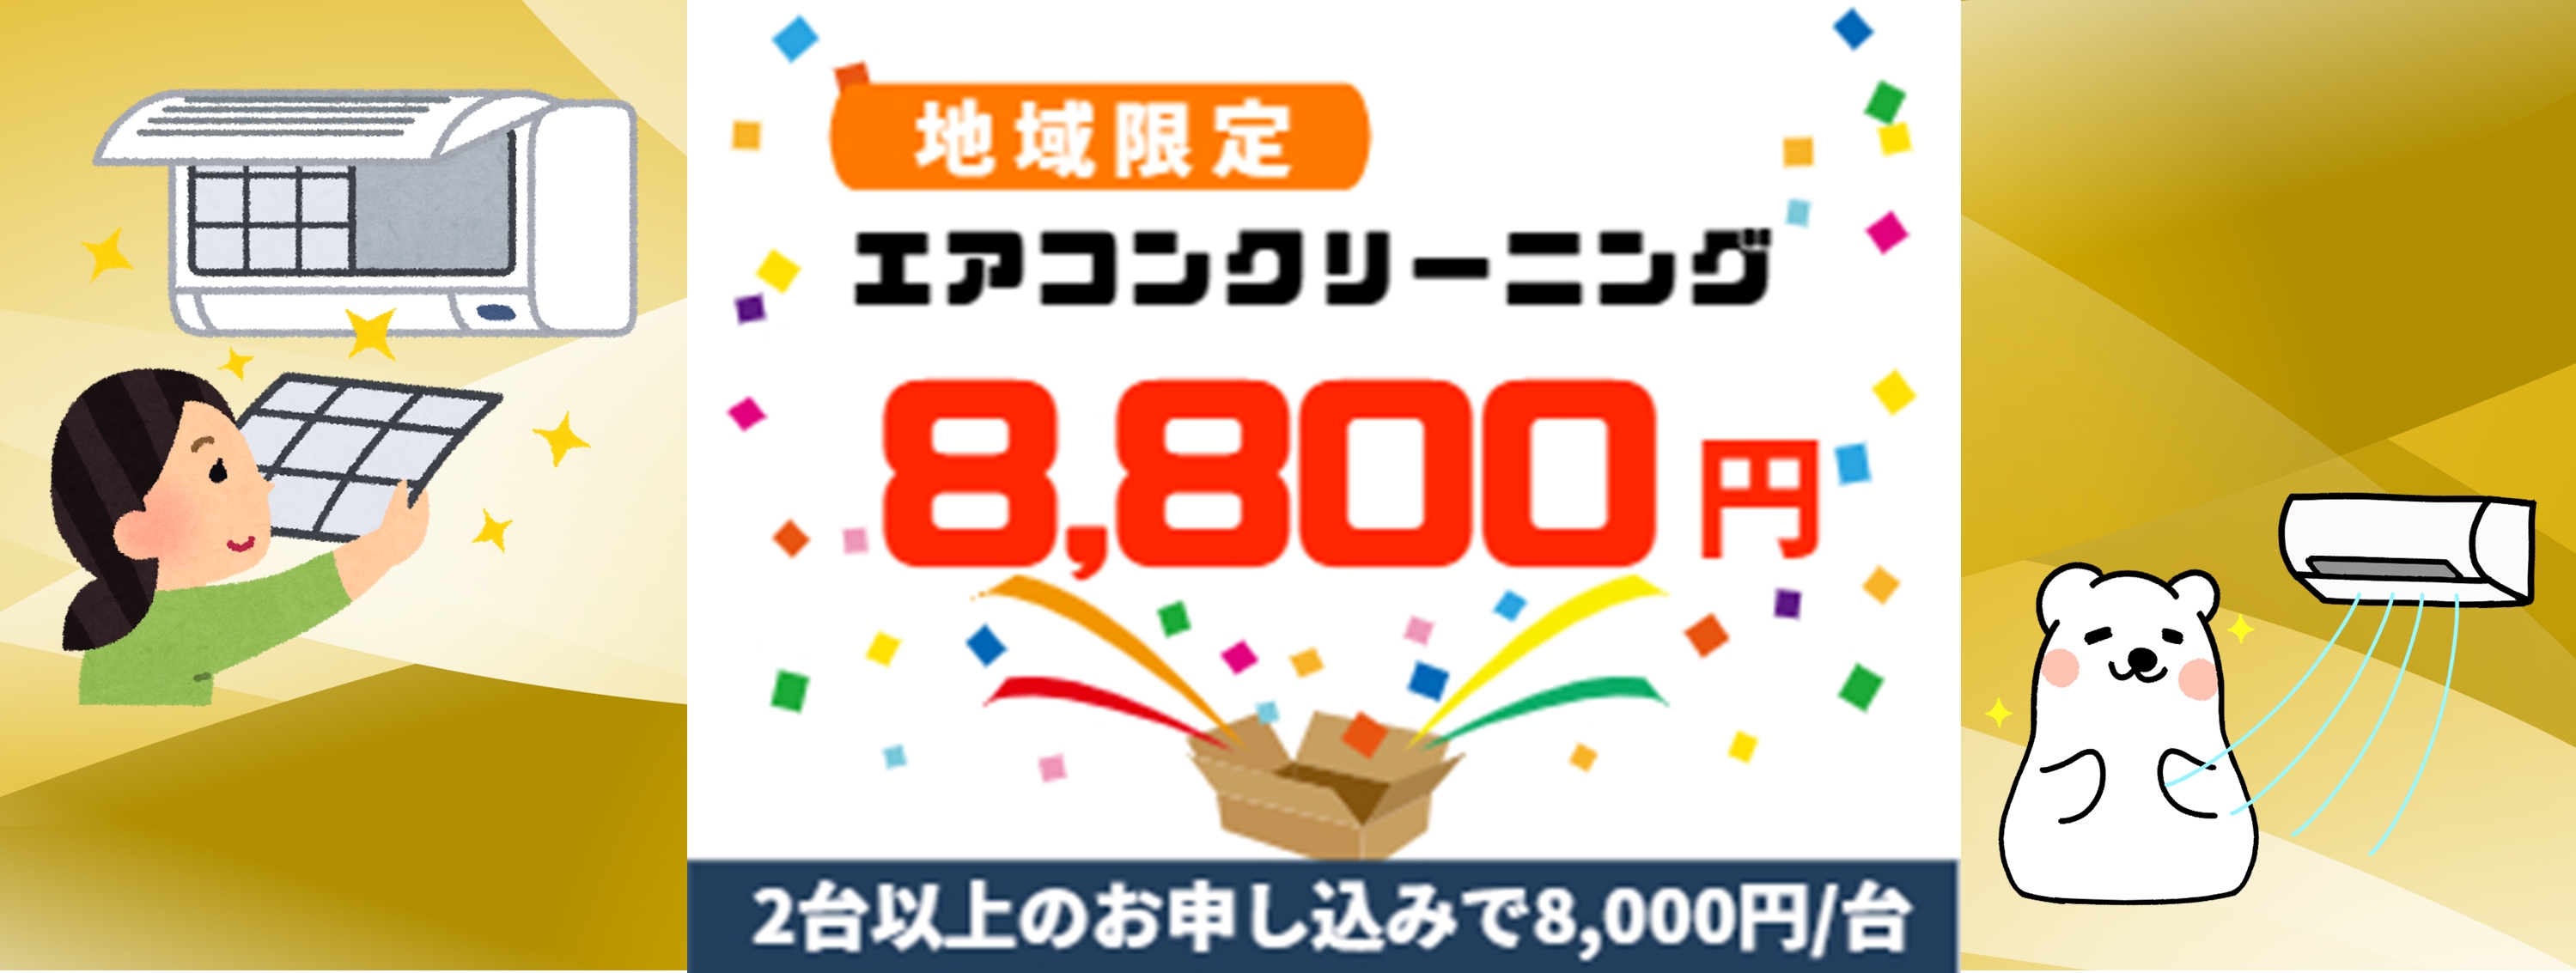 大井町キャンペーン価格